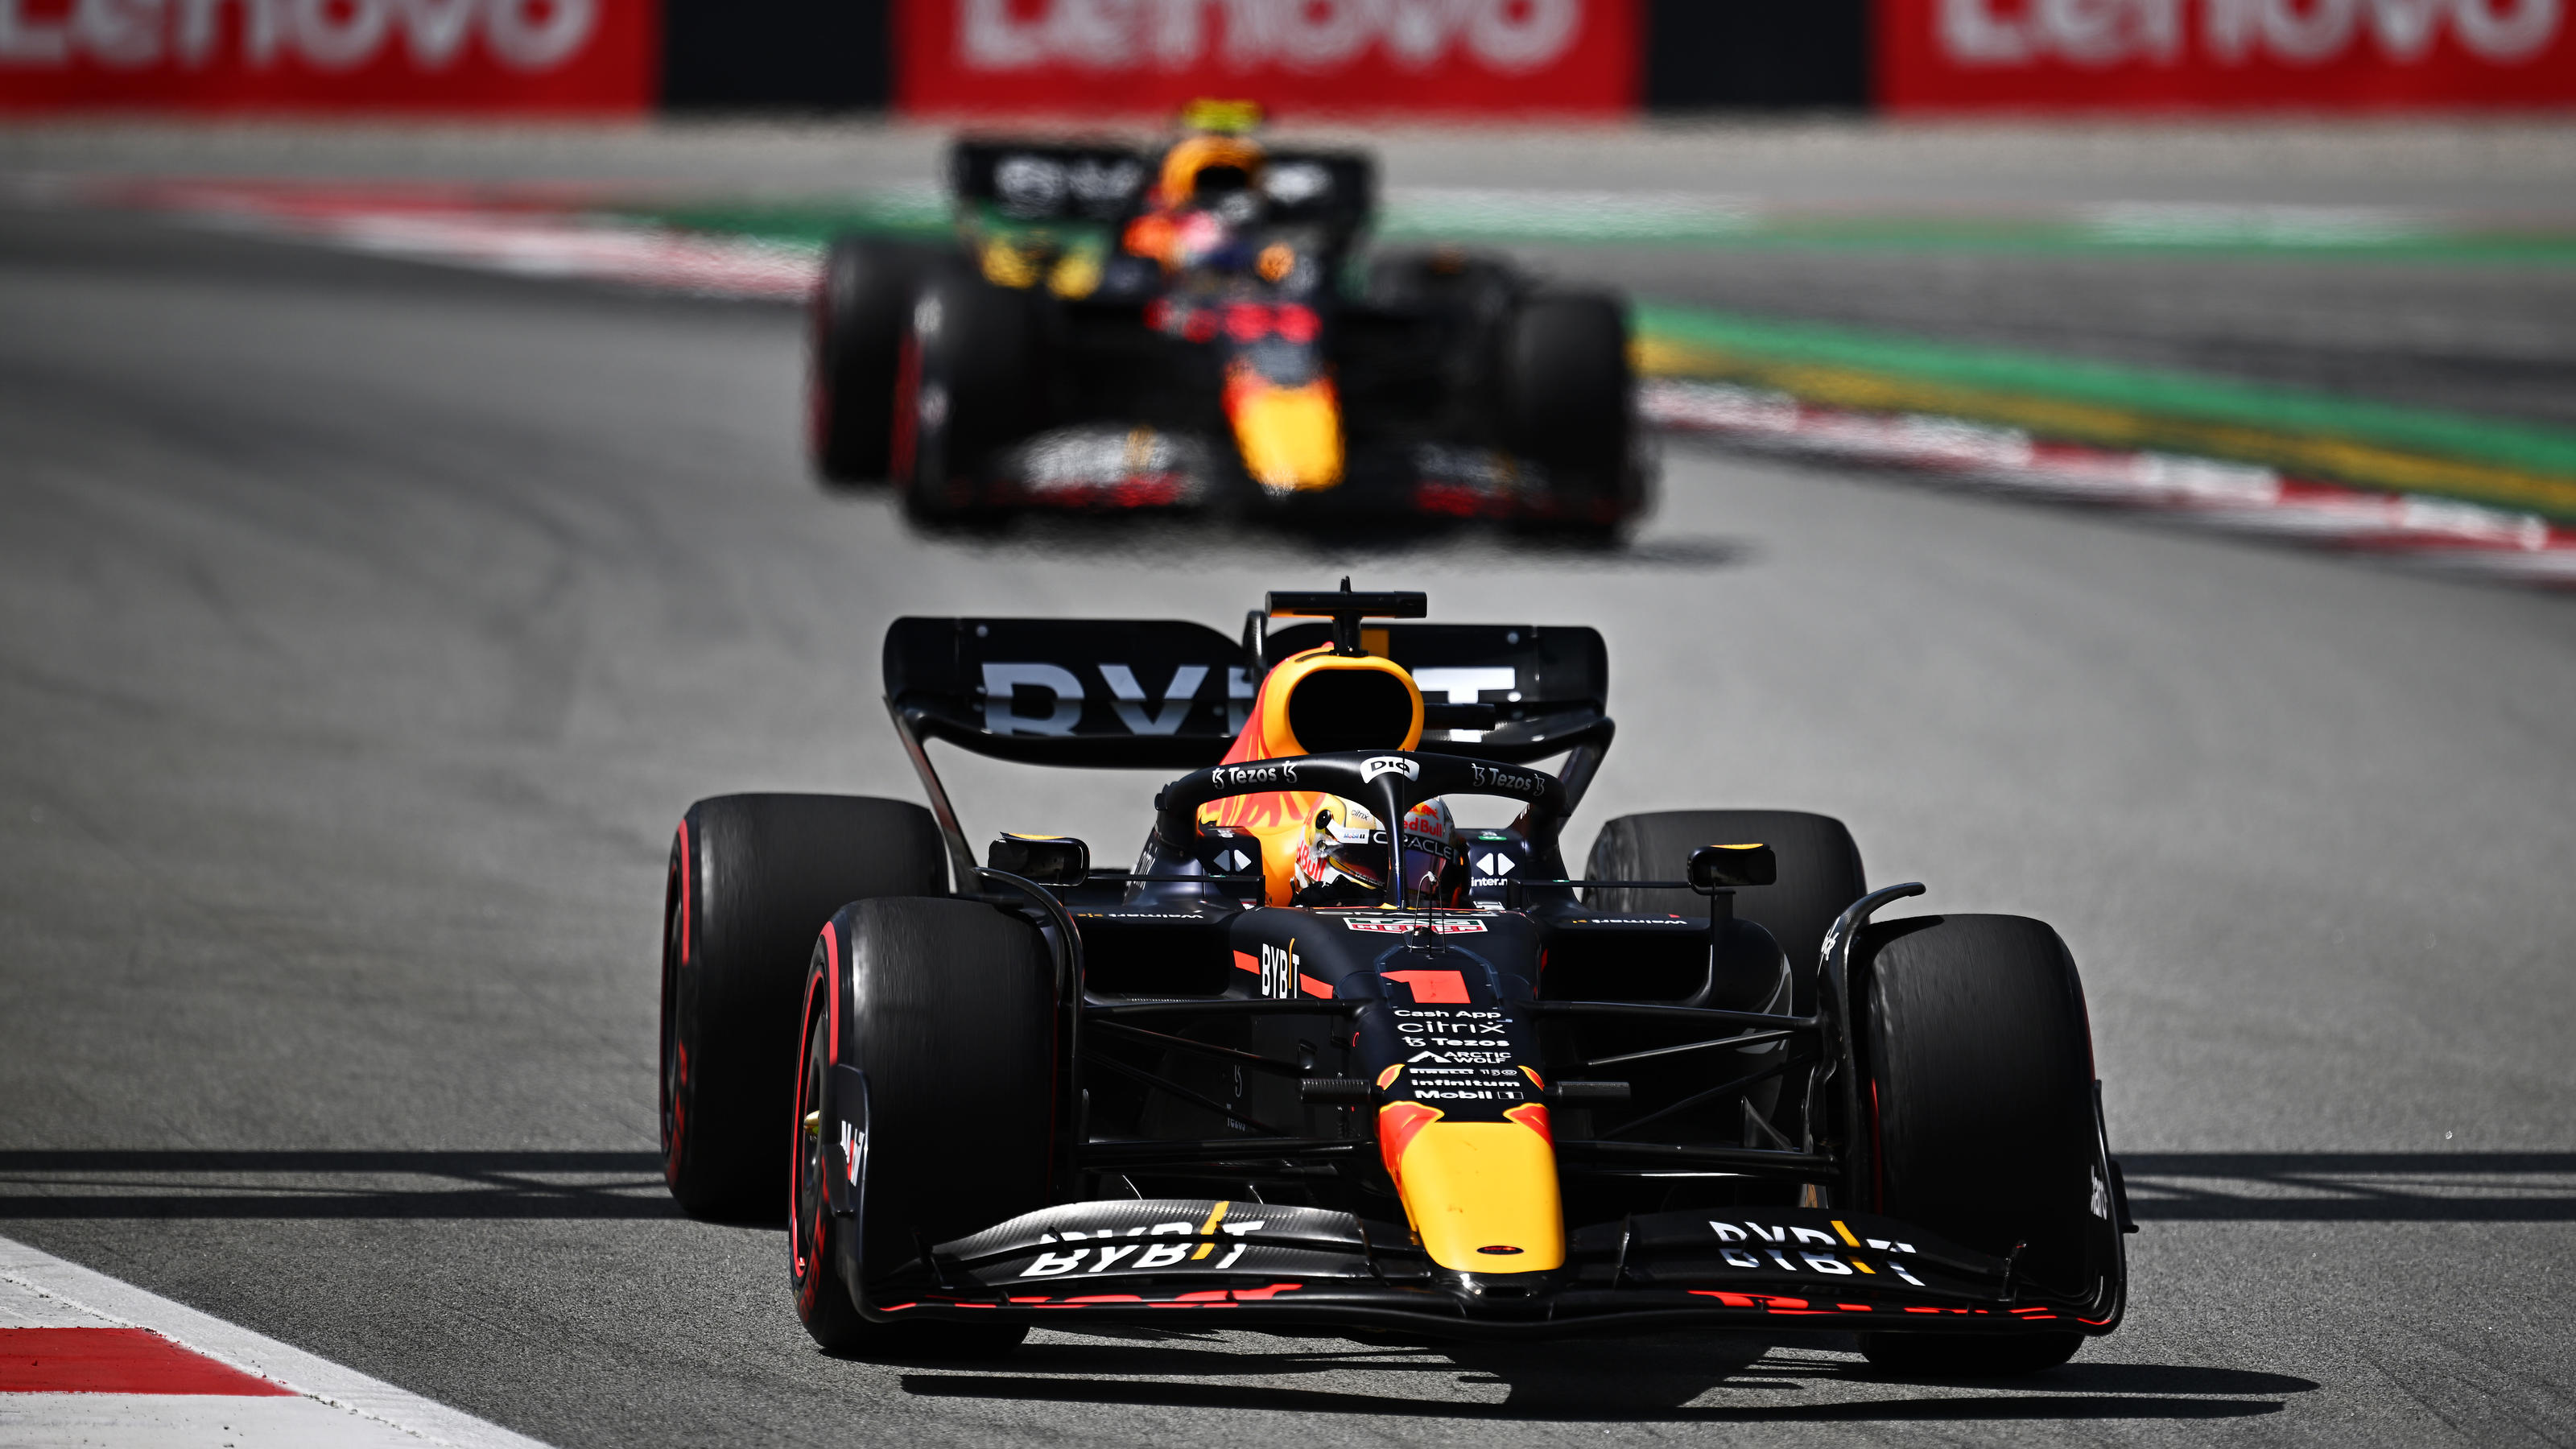 Formel 1 in Spanien Max Verstappen staubt Sieg in irrem Hitze-Rennen ab